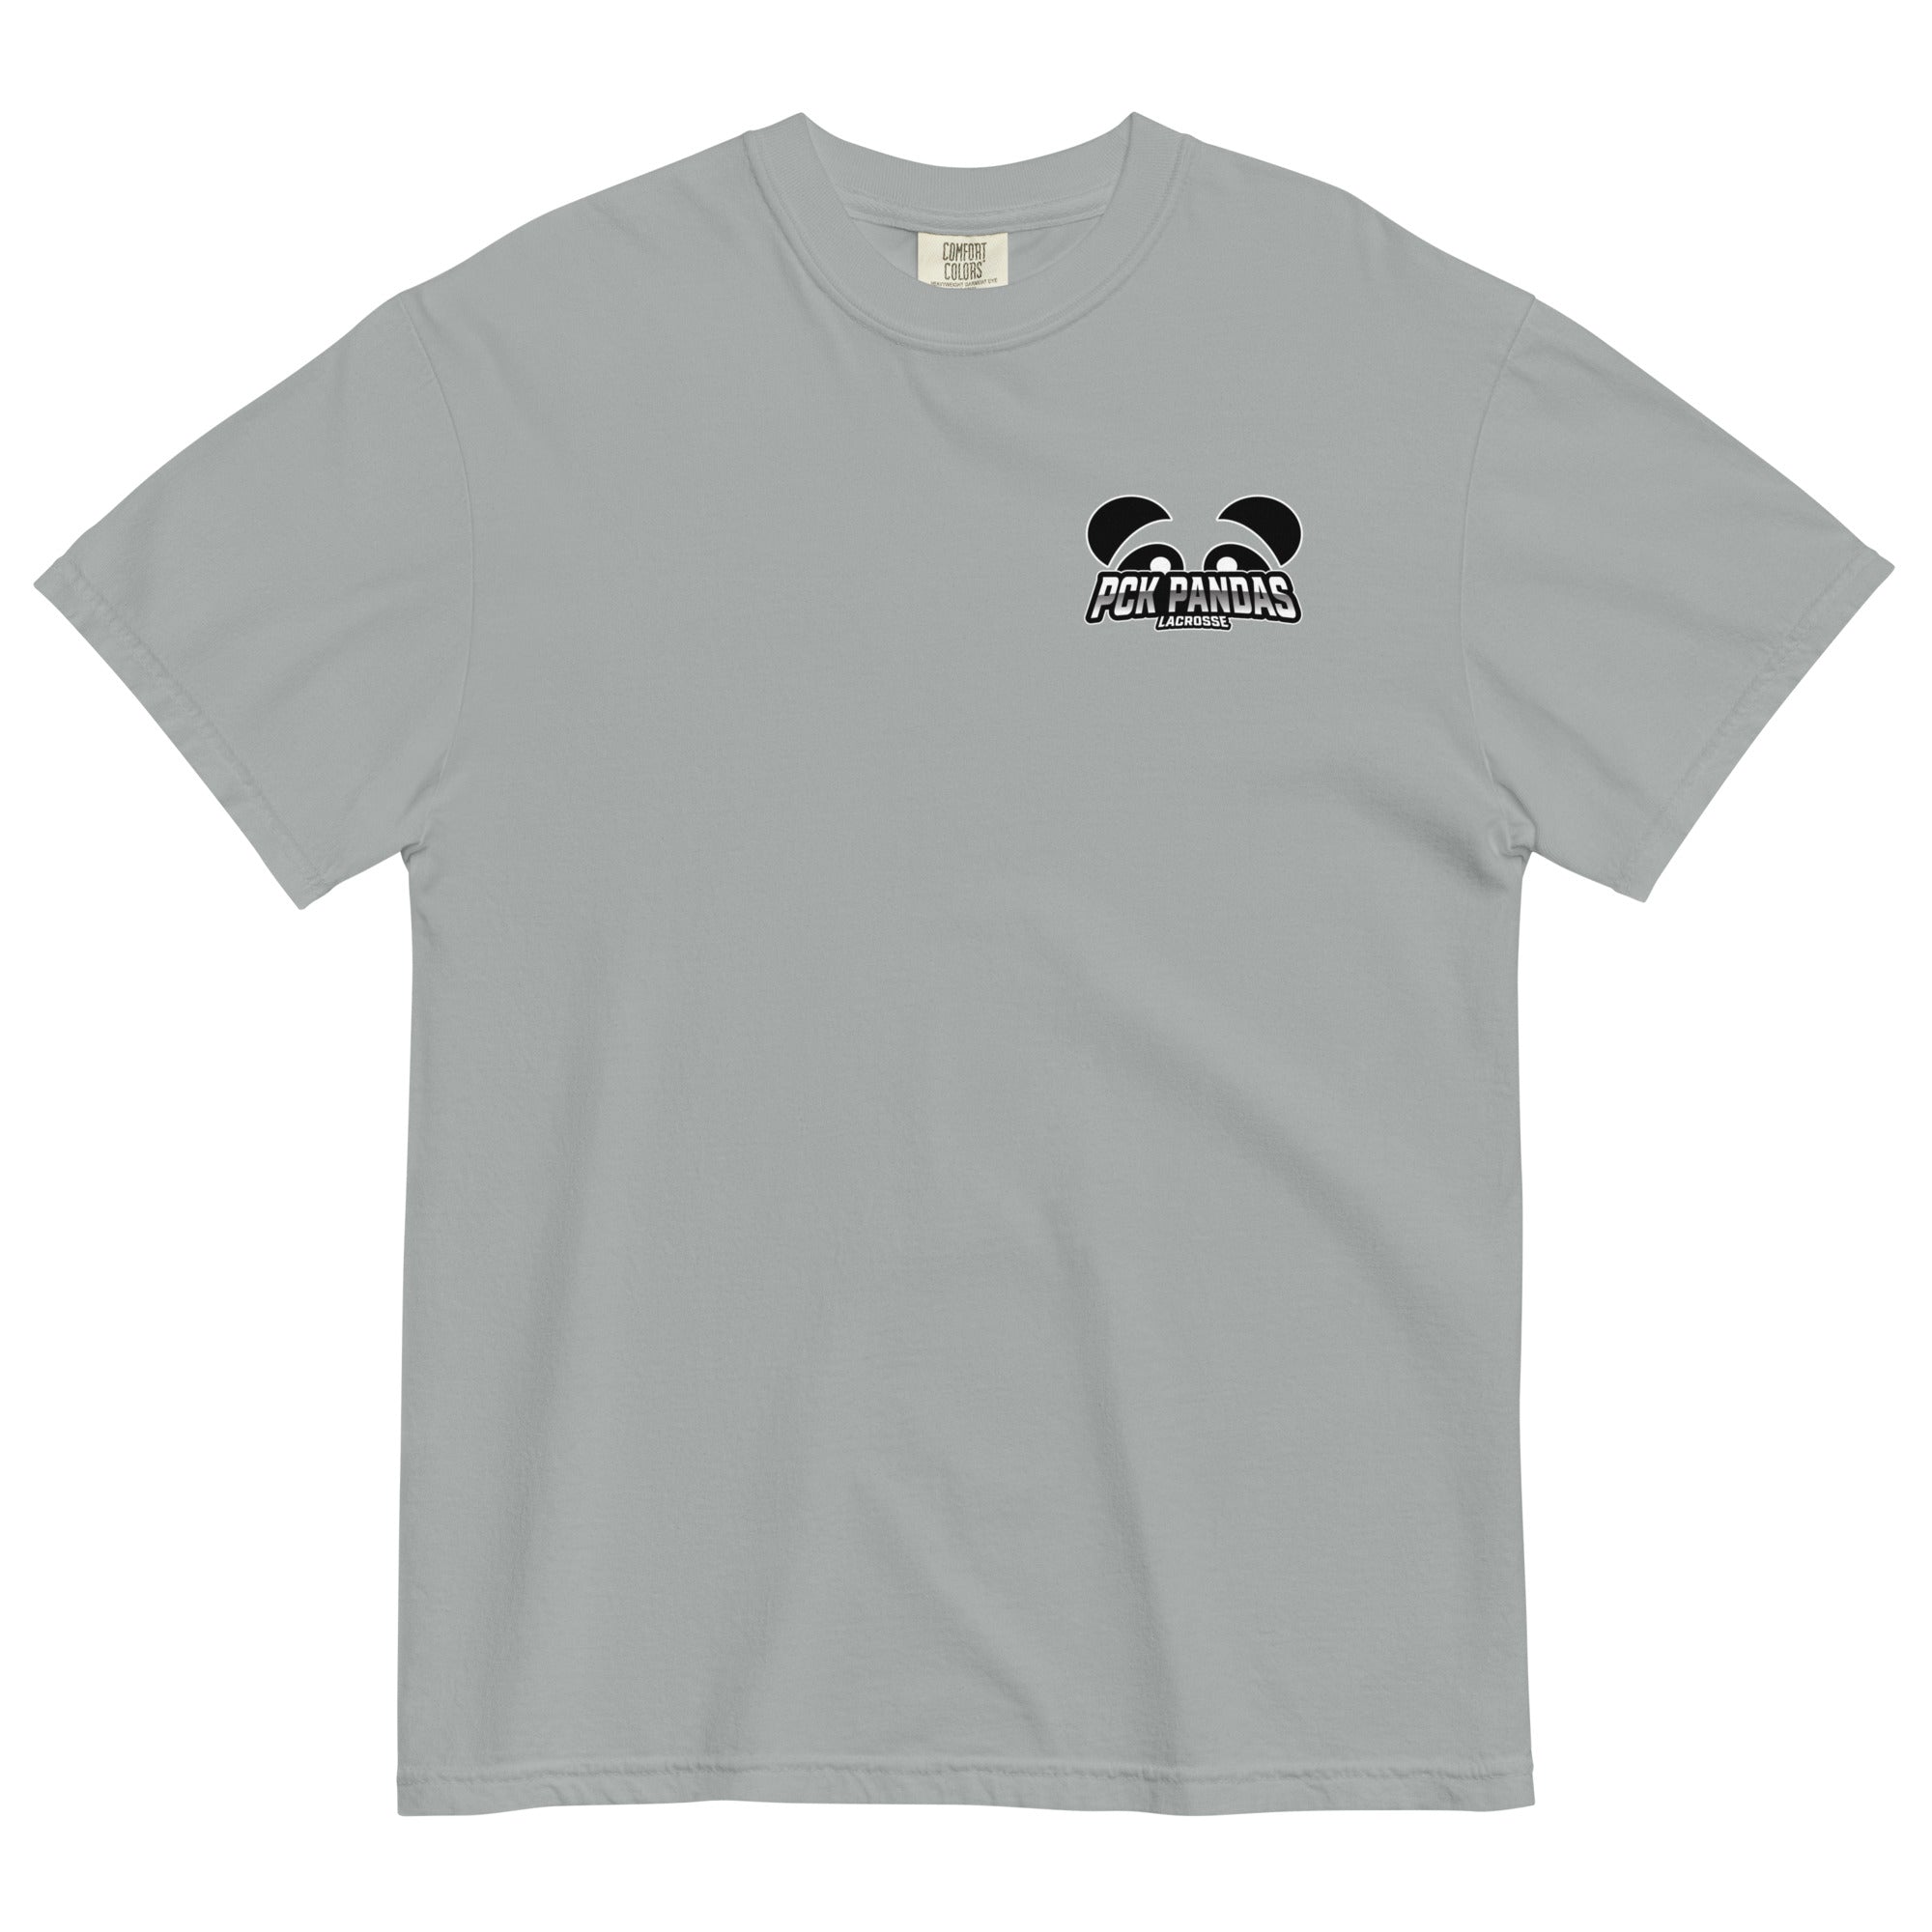 PCK Pandas Unisex Heavyweight T-shirt